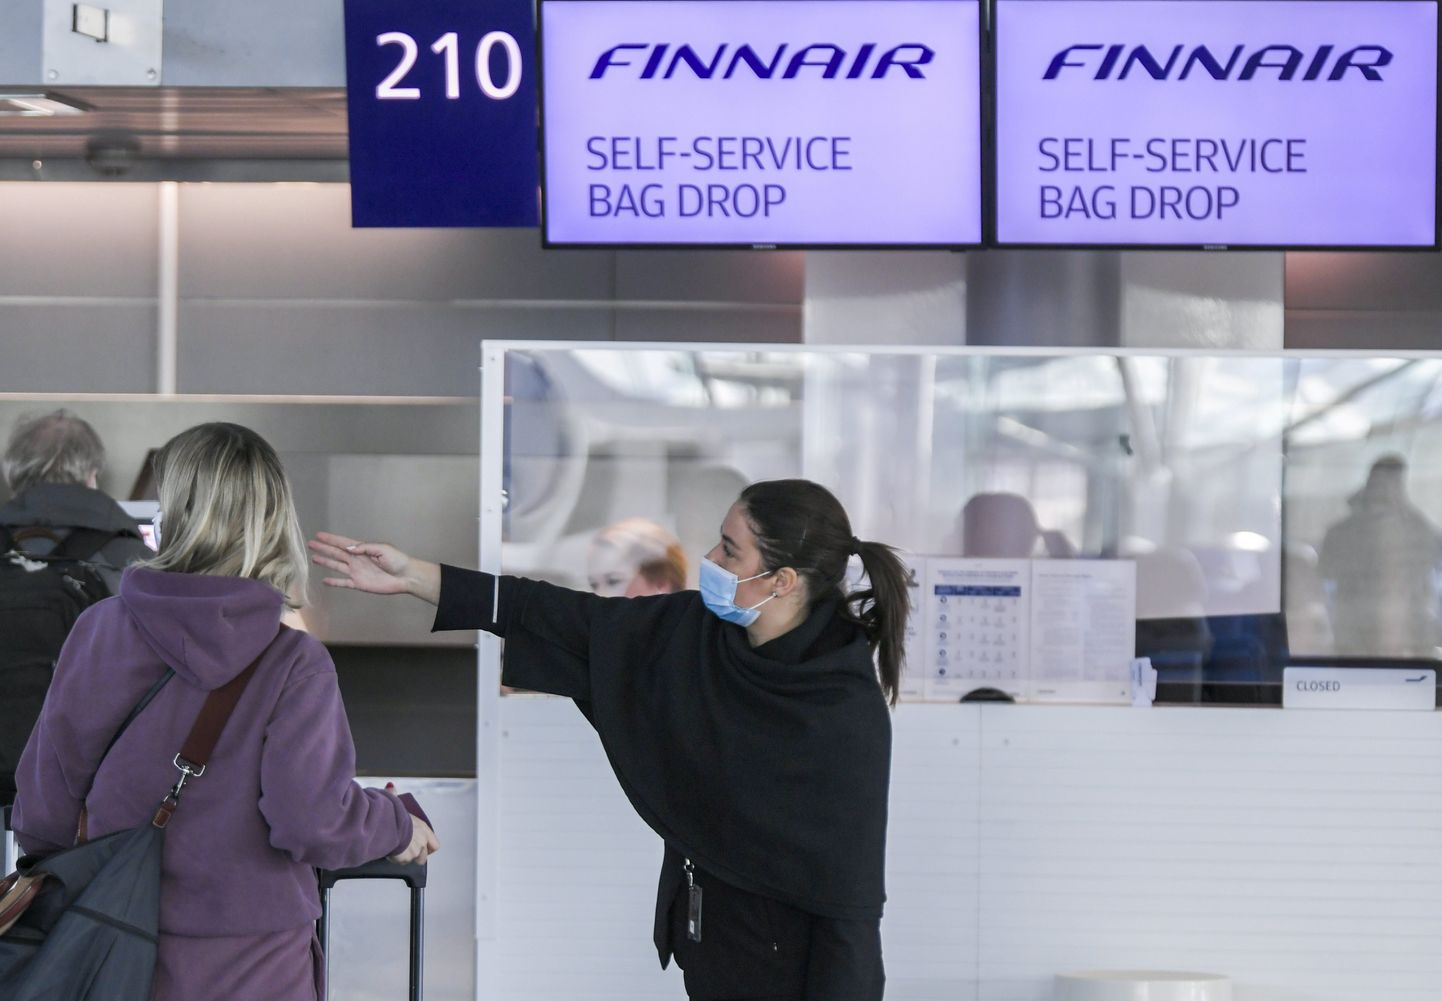 Soome lennufirma Finnair töötaja juhatamas Helsinki-Vantaa lennujaamas reisijat. Foto on tehtud 18. mail 2020